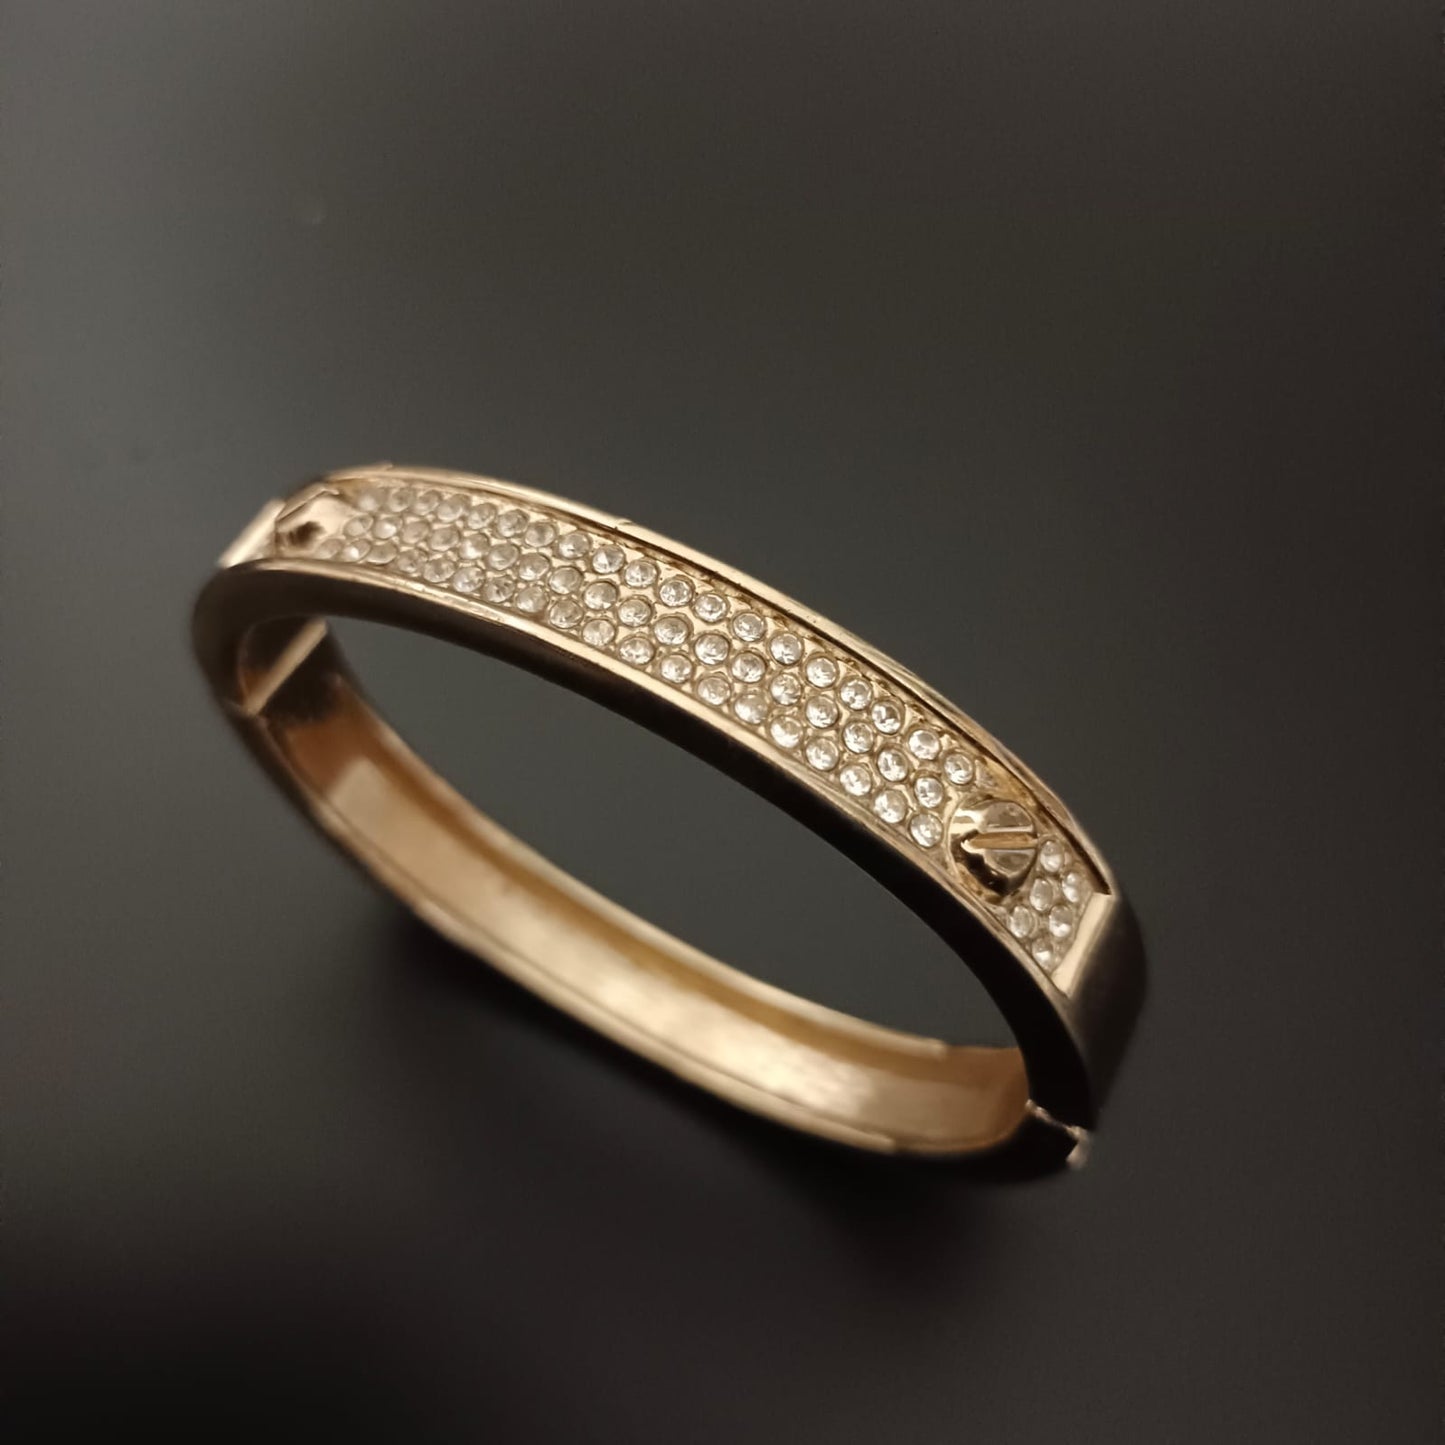 New Diamond Design Golden Bracelet For Women and Girl-Jack Marc